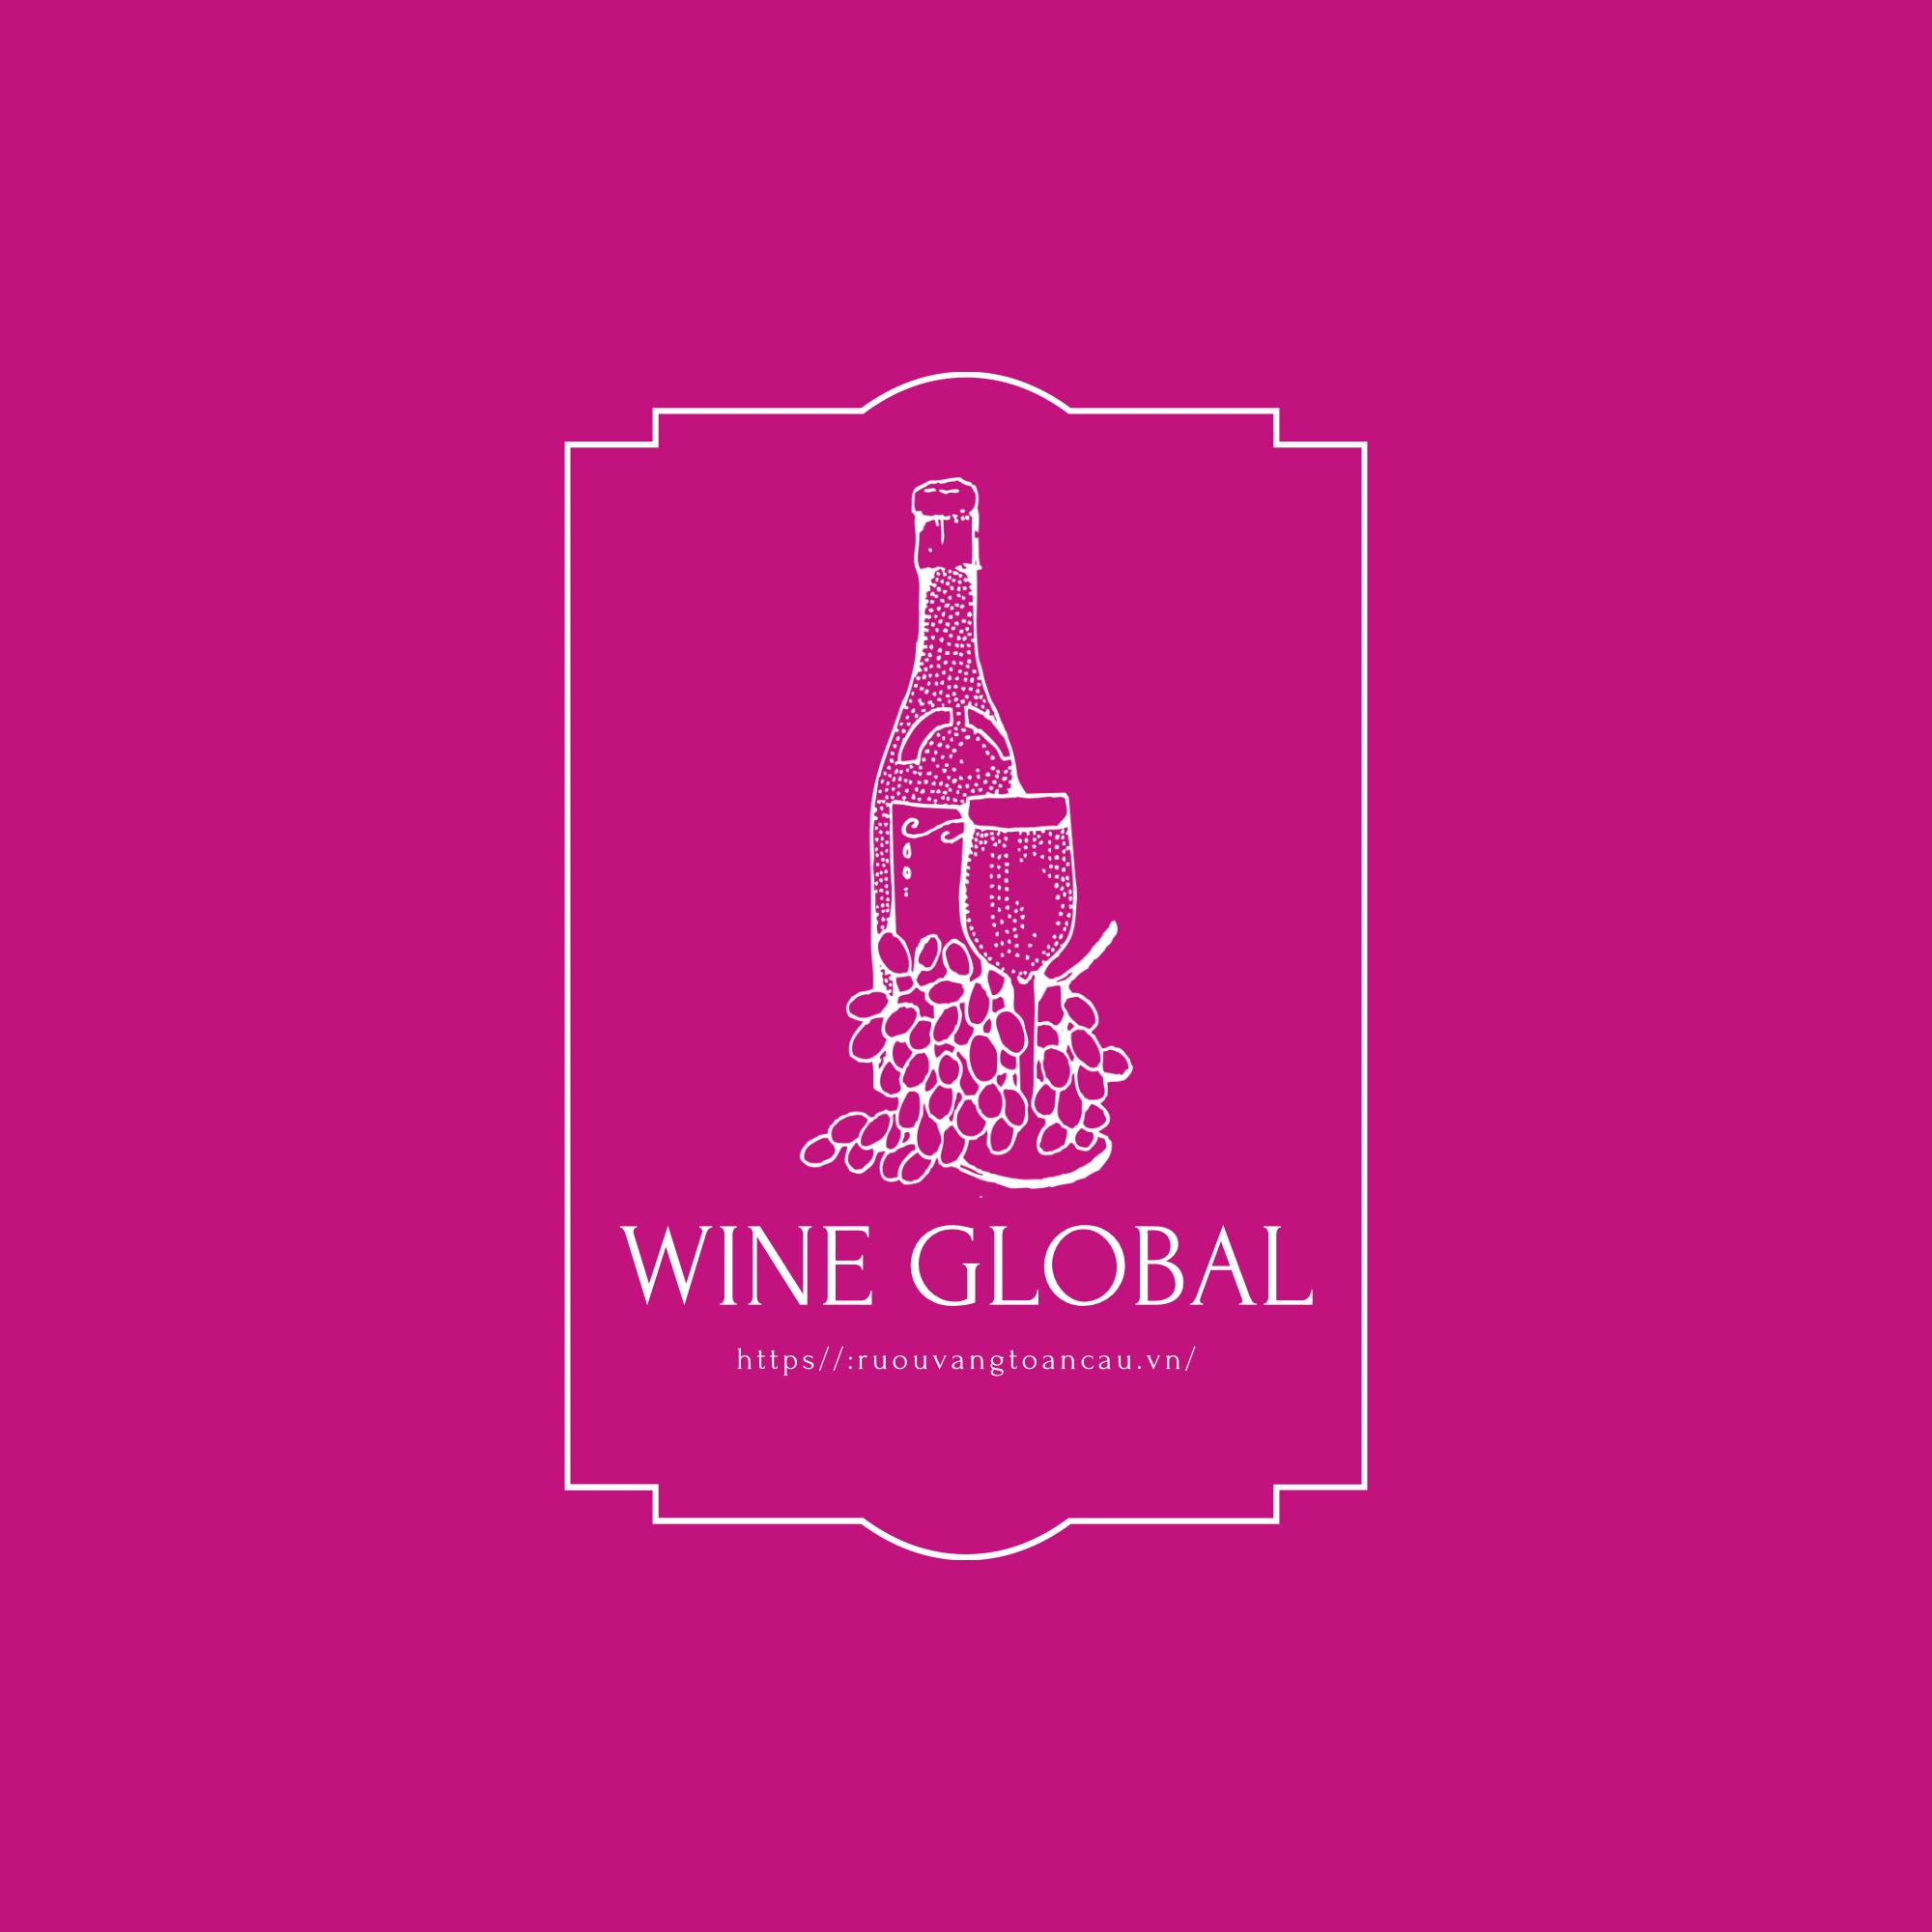 Wine Global